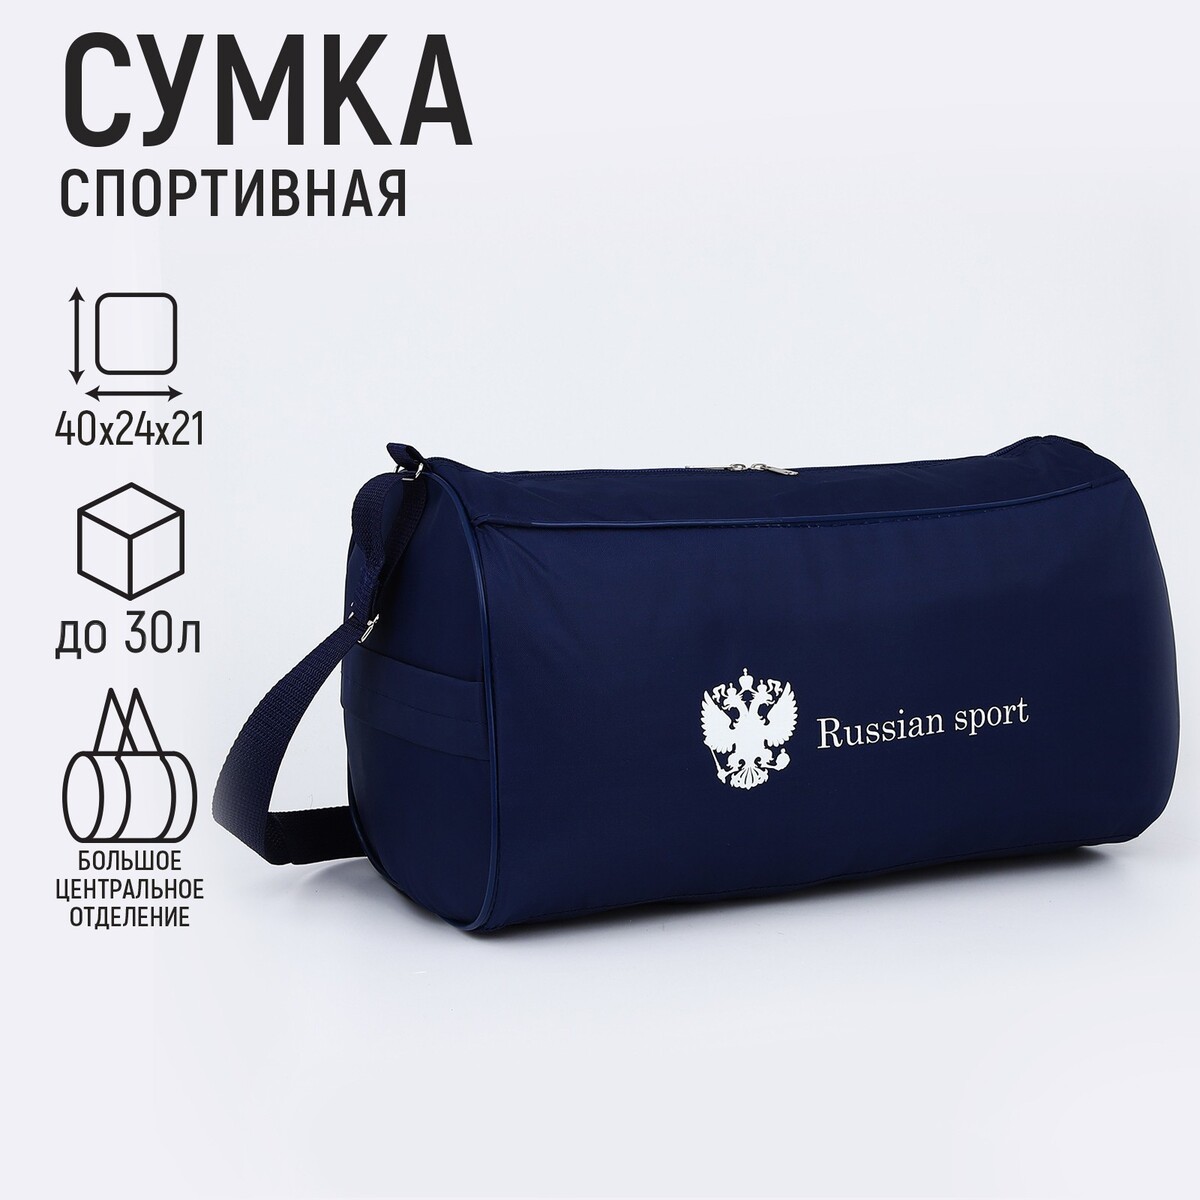 Сумка спортивная russian team, наружный карман, 40 см х 24 см х 21 см, цвет синий сумка спортивная russian team наружный карман 40 см х 24 см х 21 см синий